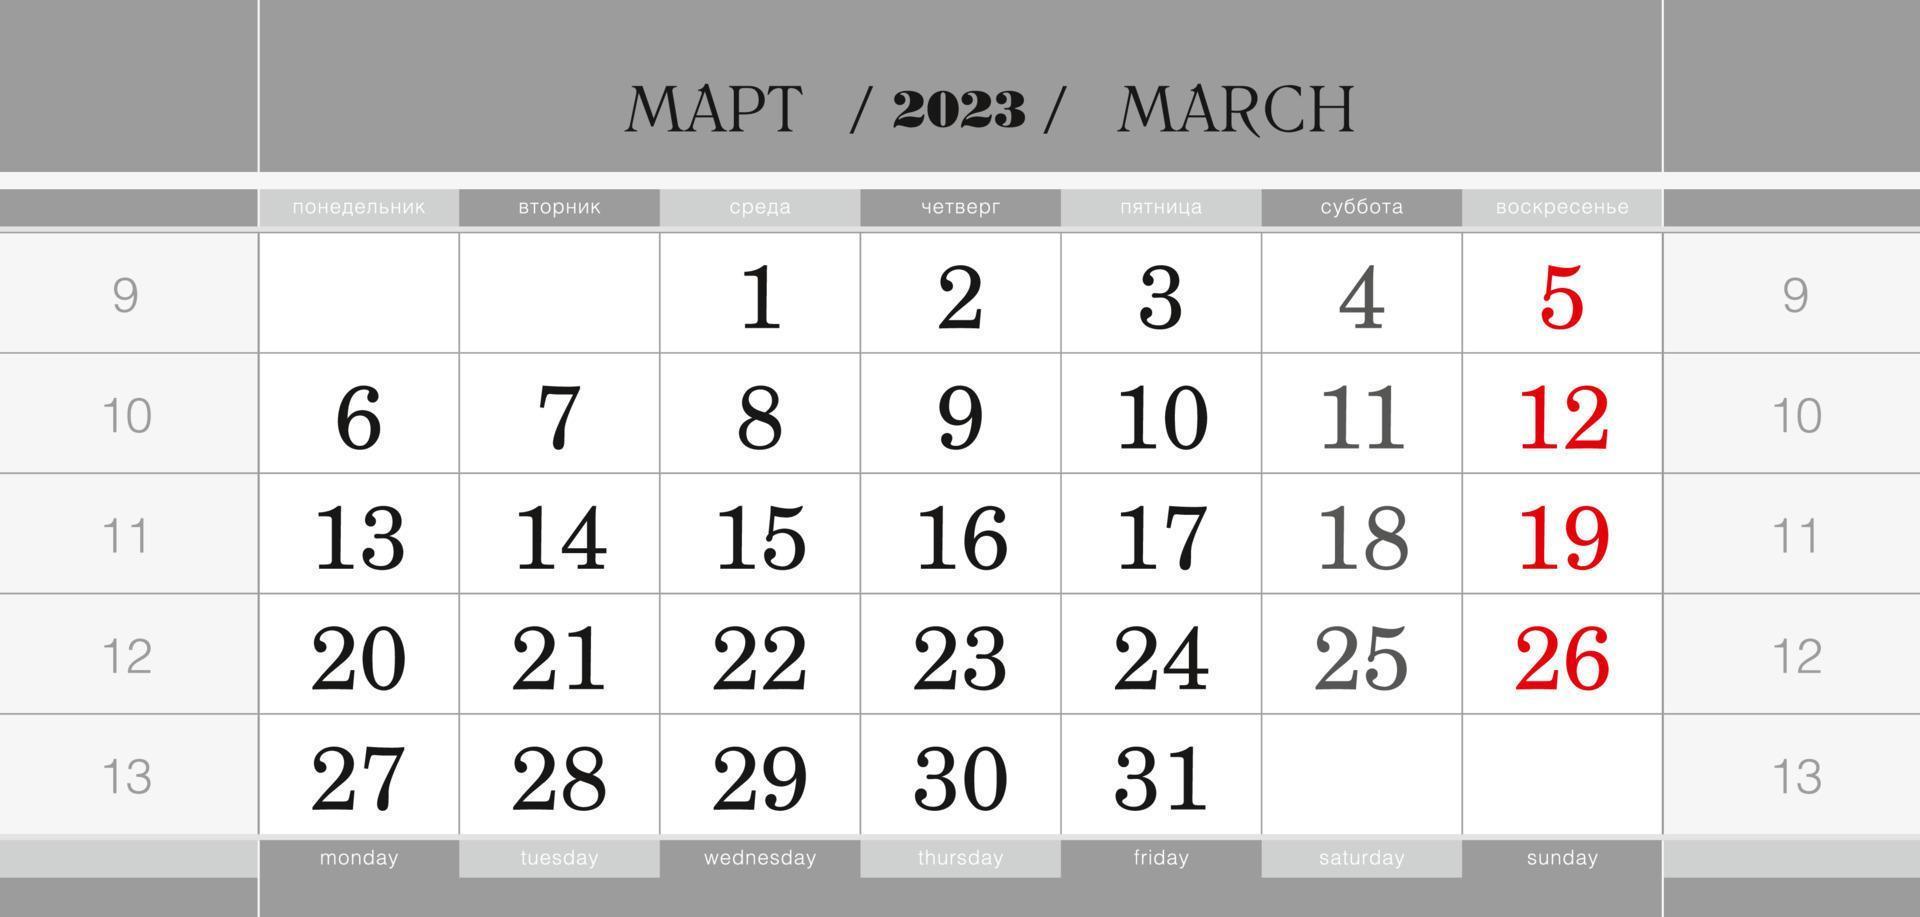 bloque trimestral del calendario para el año 2023, marzo de 2023. calendario de pared, inglés y ruso. la semana comienza a partir del lunes. vector